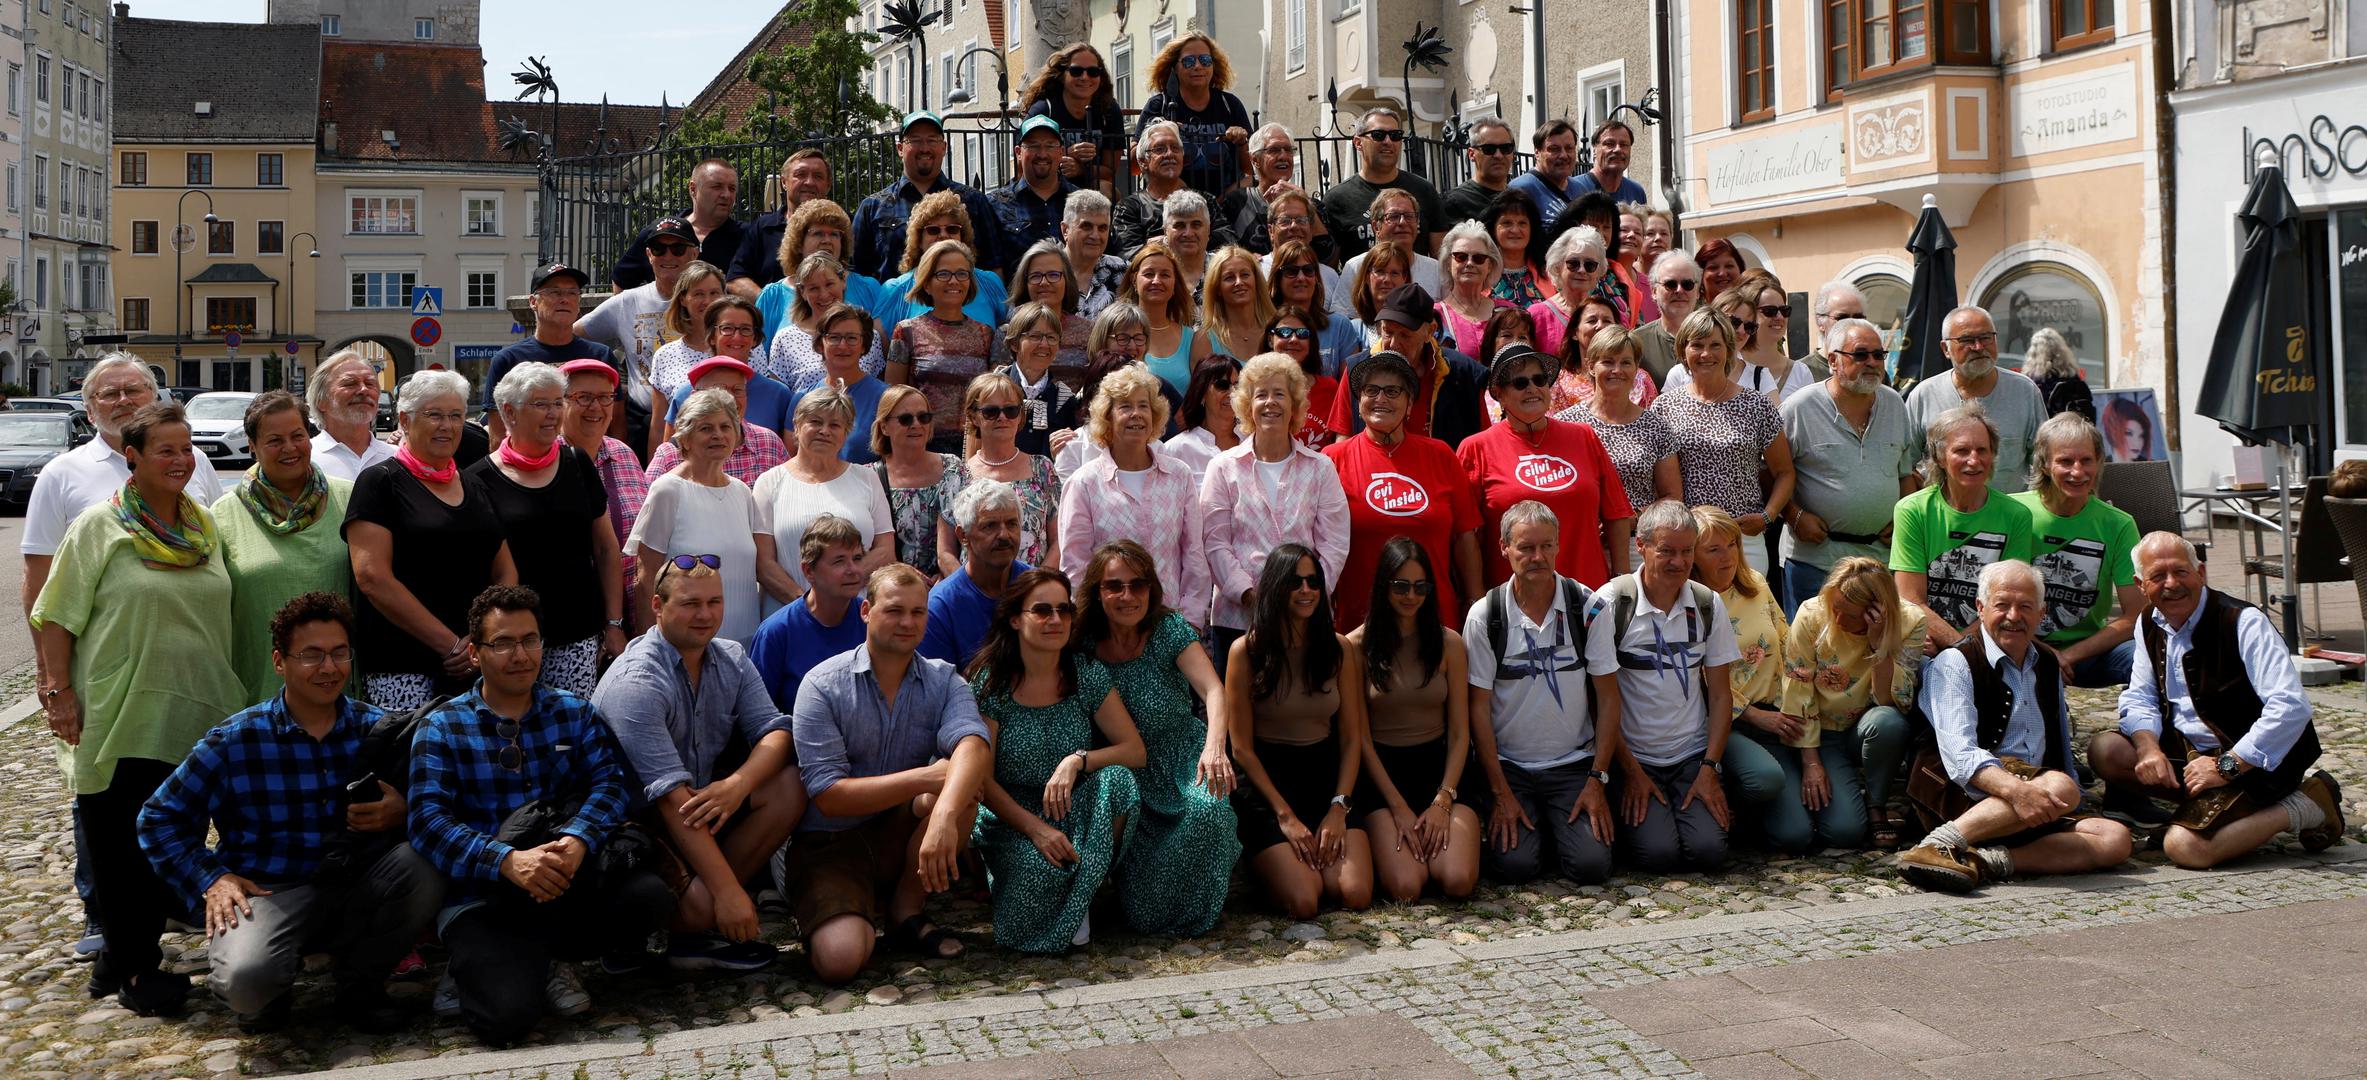 Близнецы со всего мира съехались в Австрию на встречу идентичных братьев и сестер